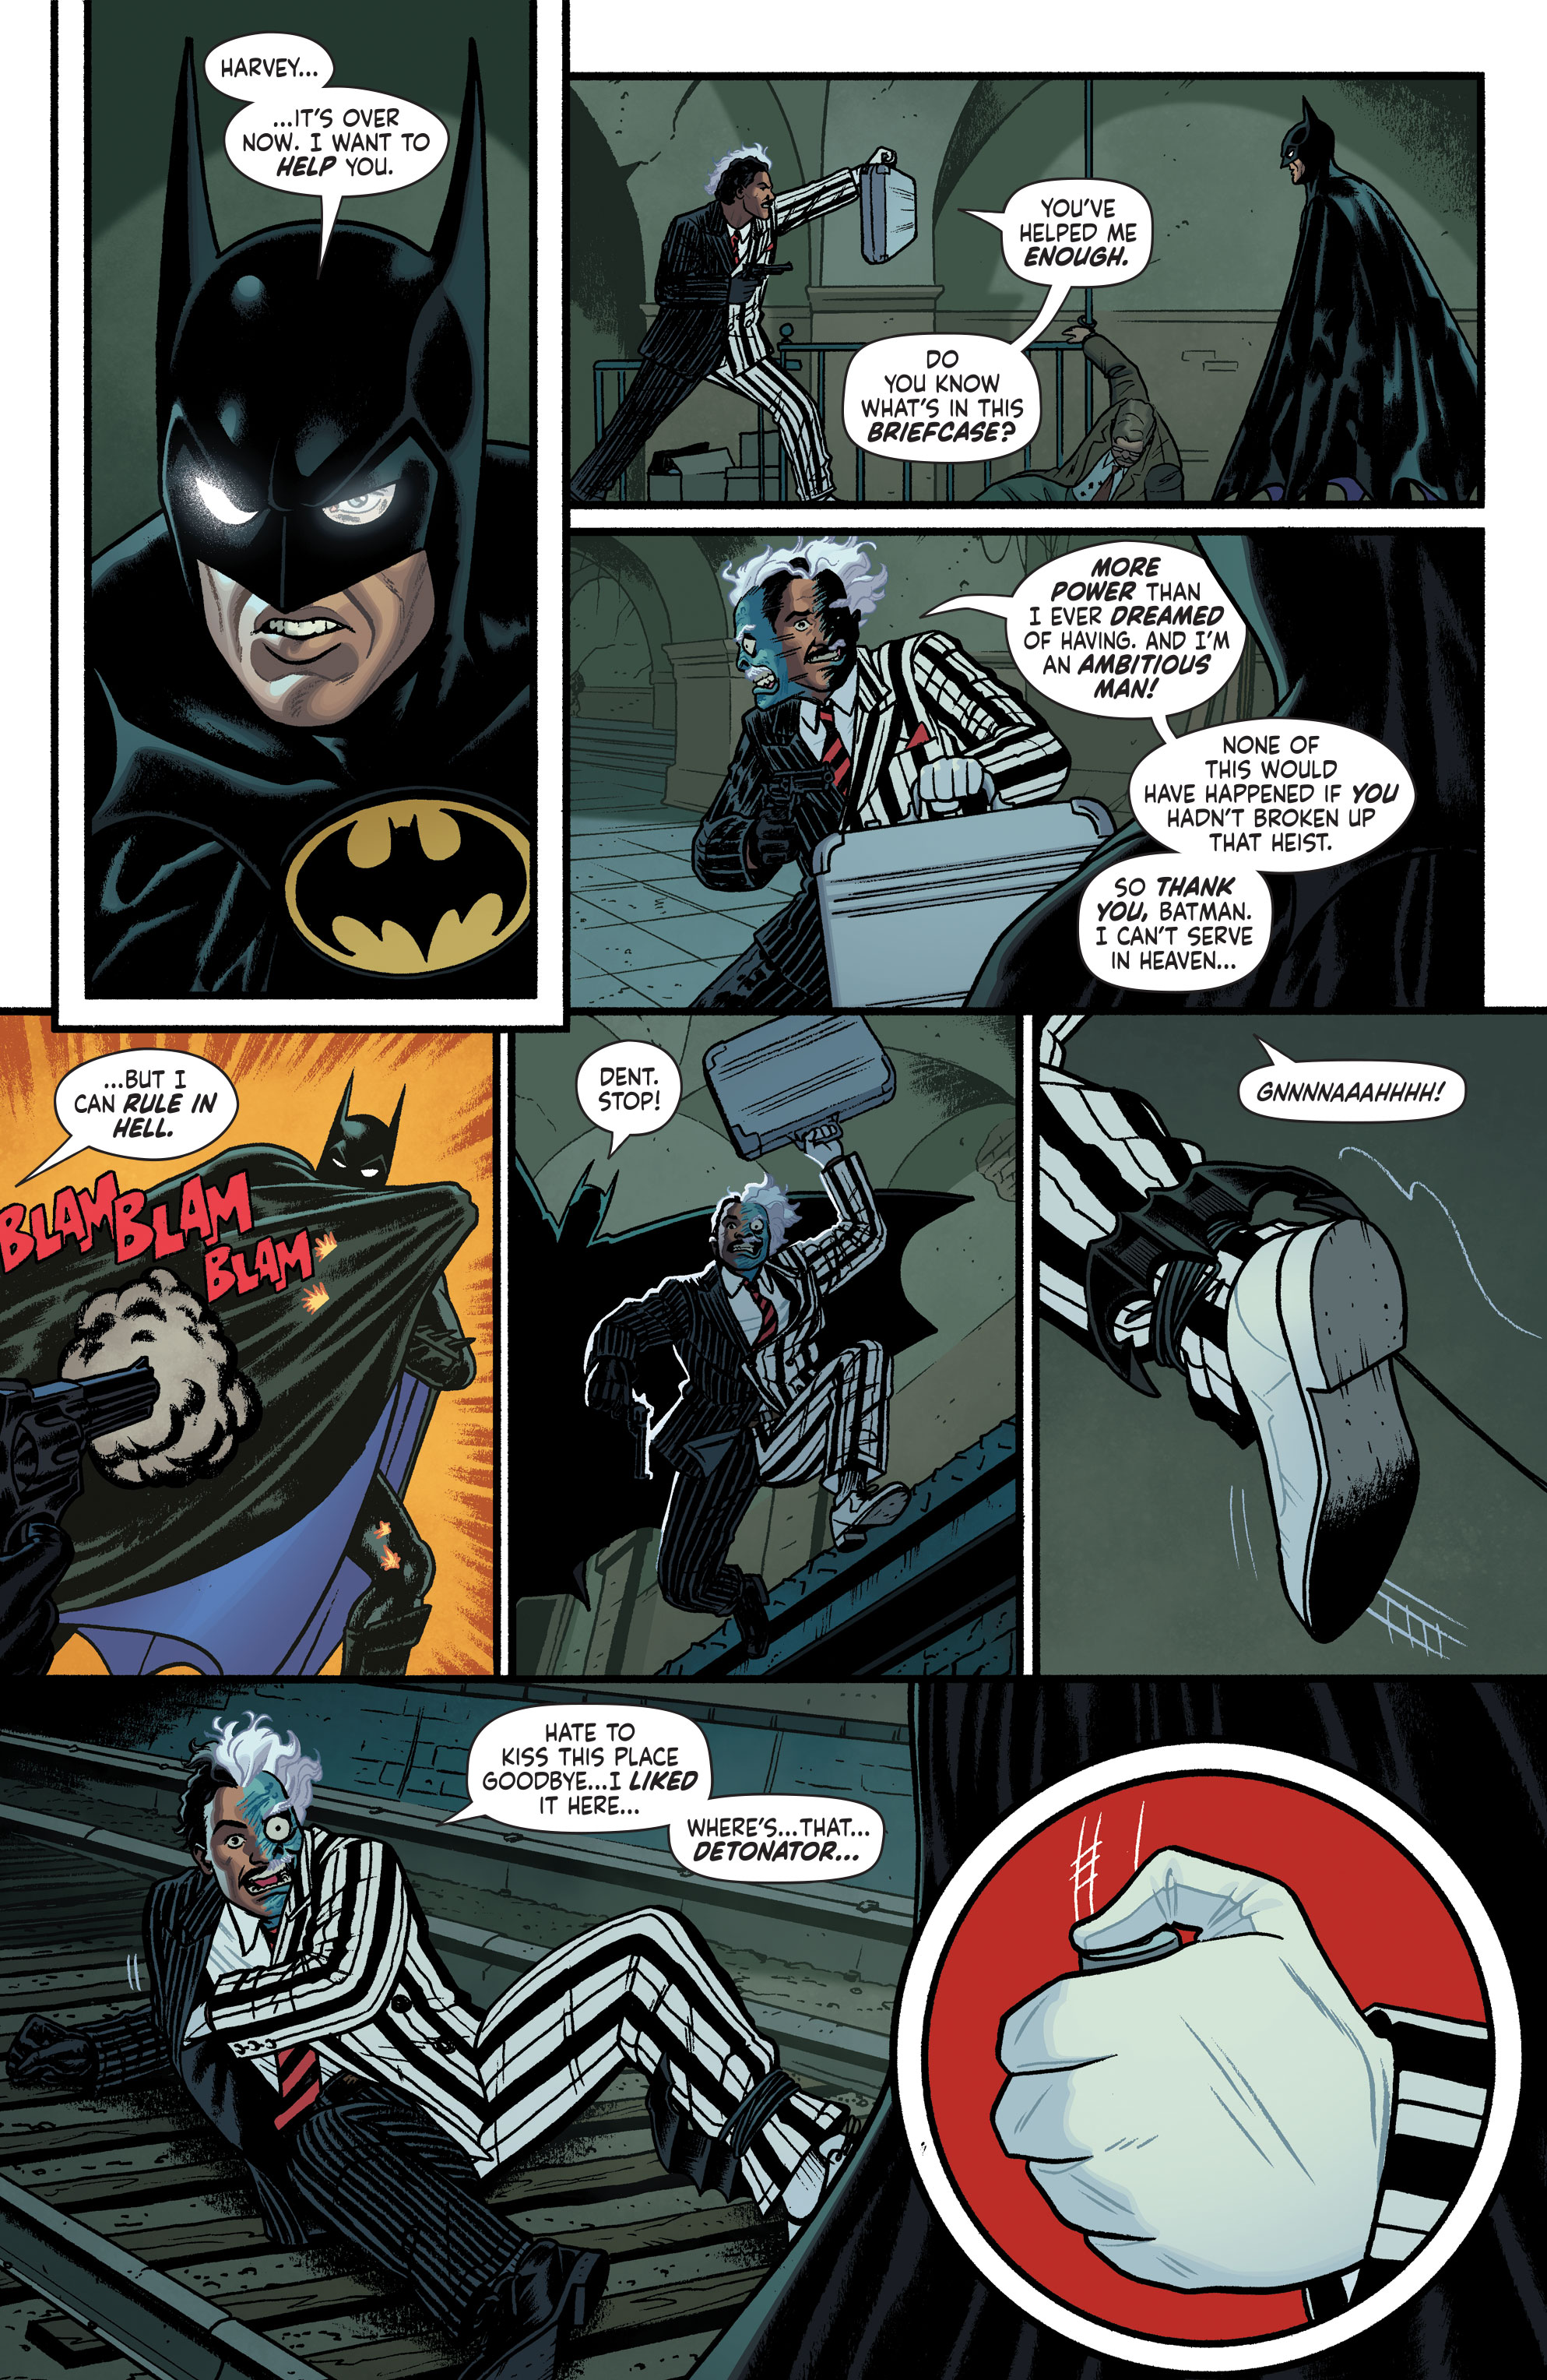 Weird Science DC Comics: Batman '89 #6 Review